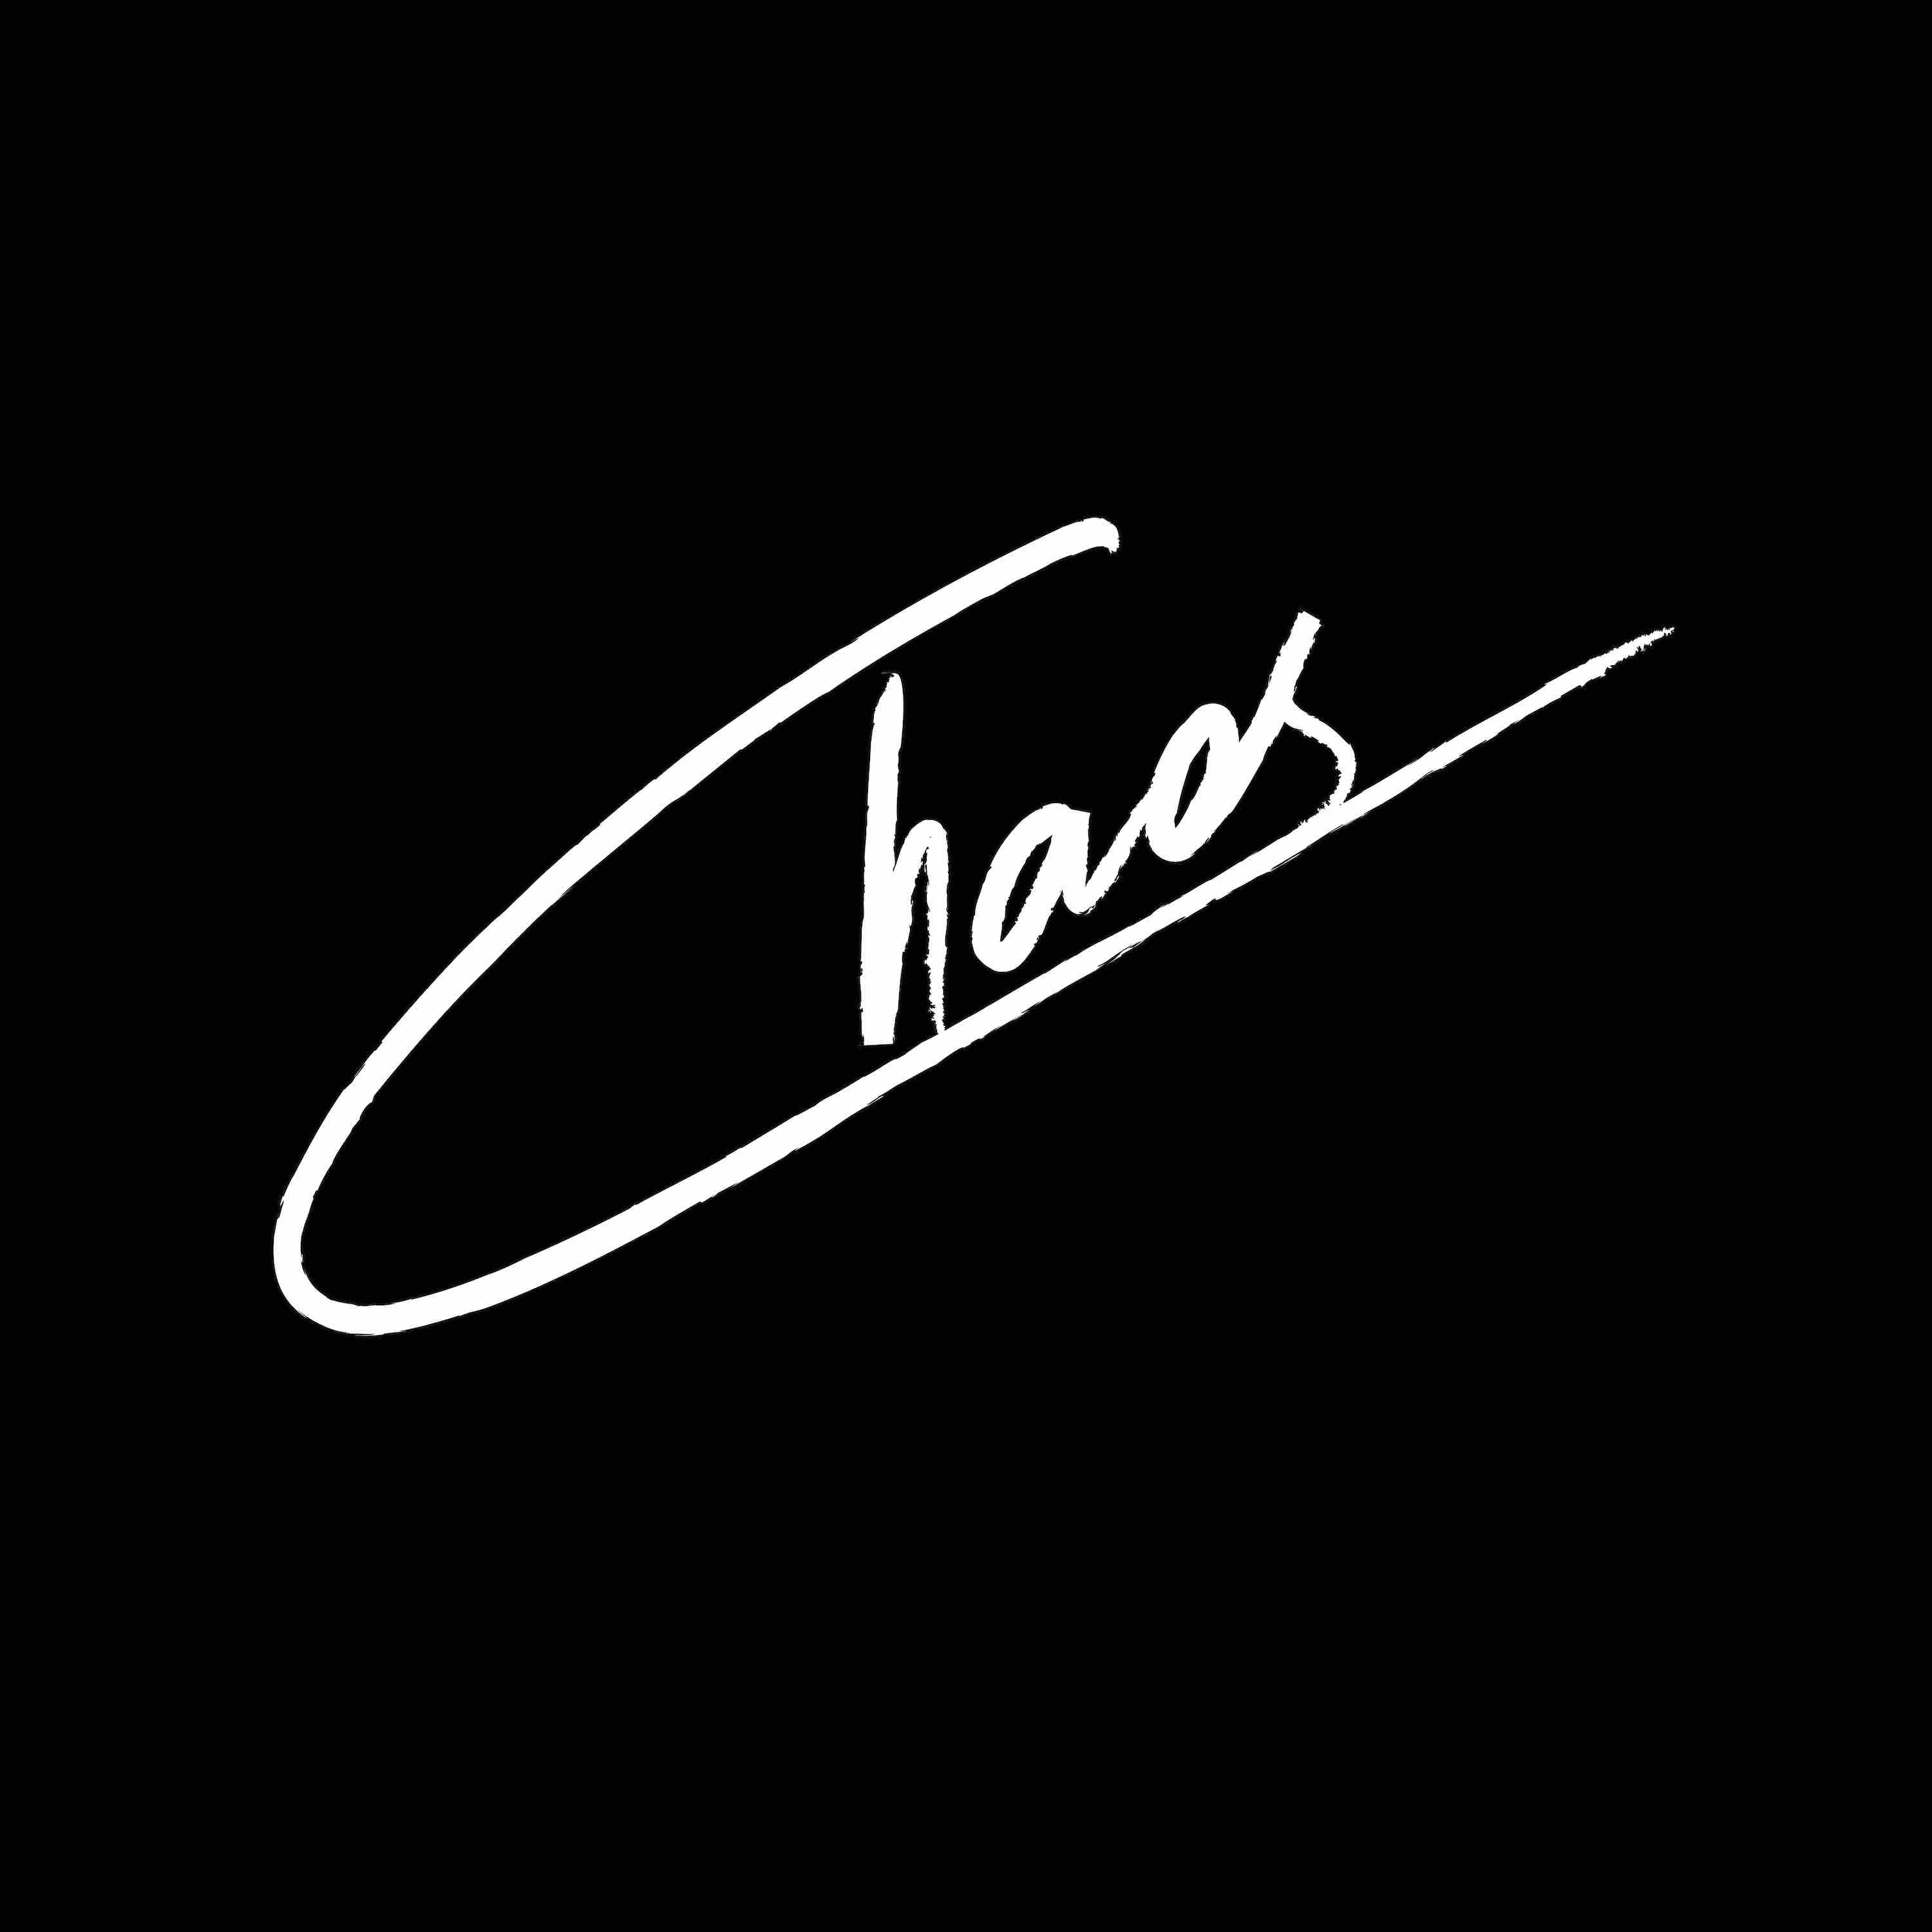 “Chaos”